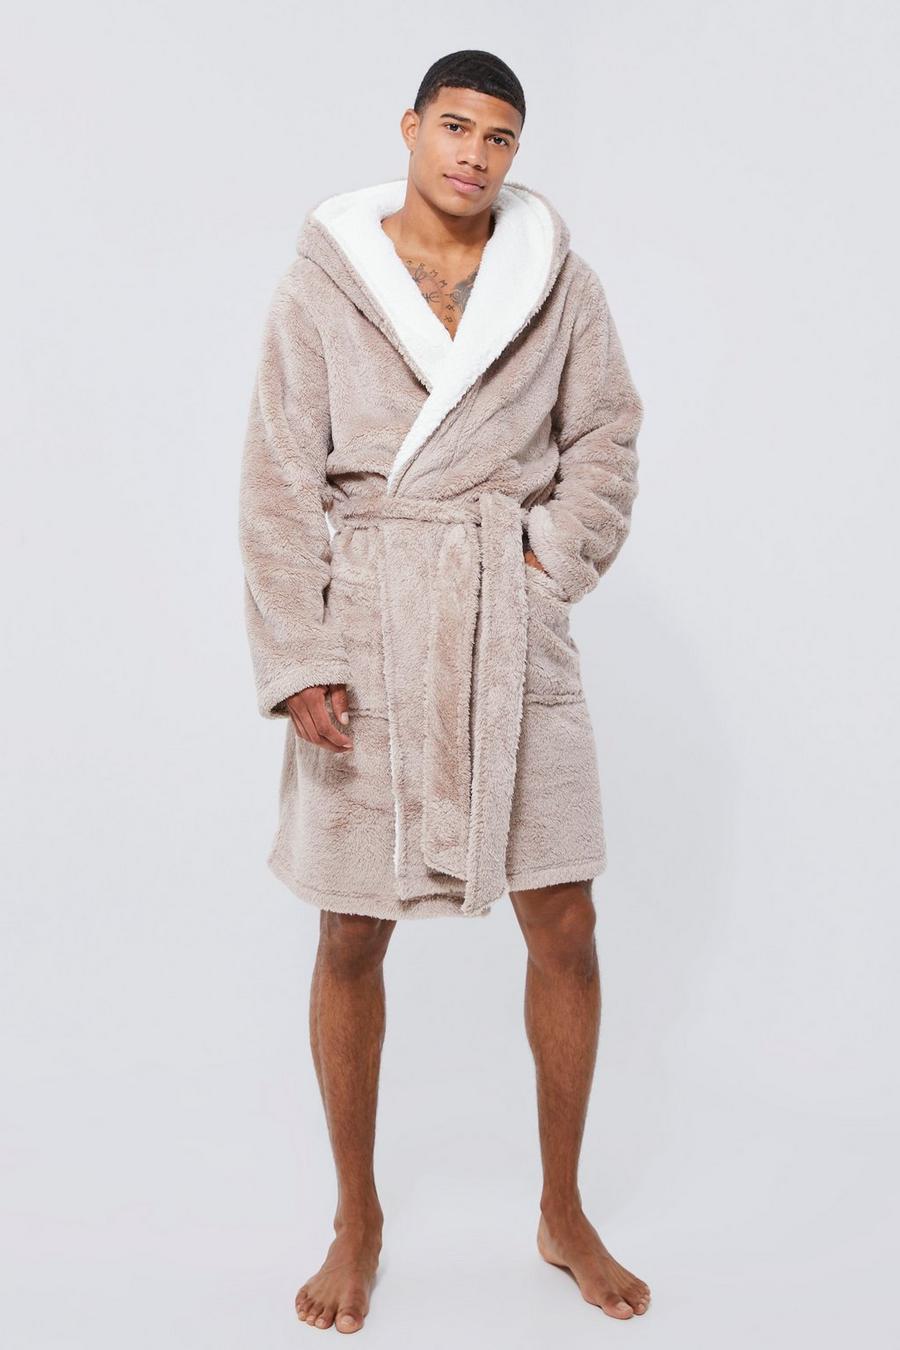 Hooded robe in Asos Men Clothing Loungewear Bathrobes 